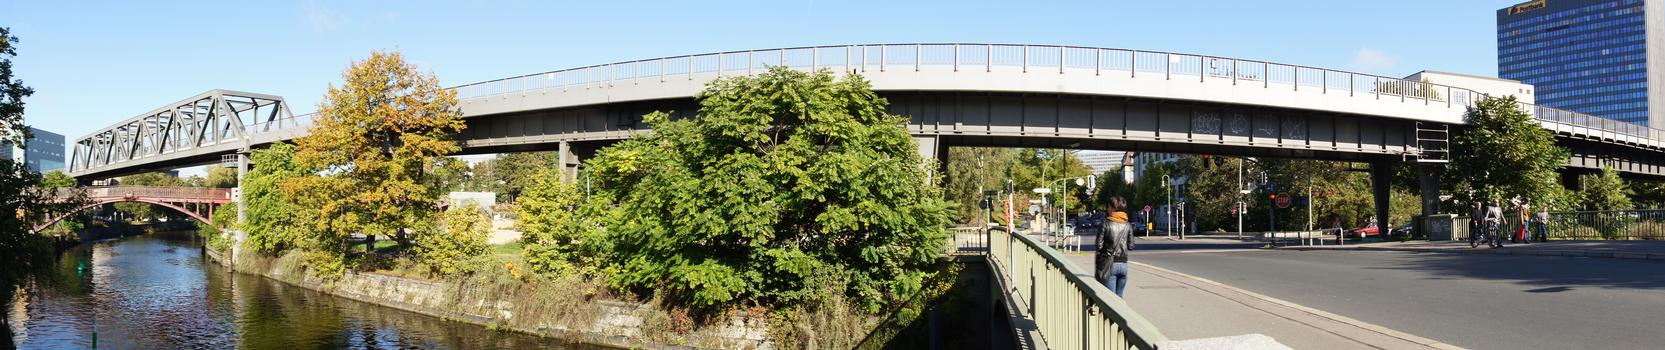 Hochbahnviadukt Hallesches Ufer (IV)